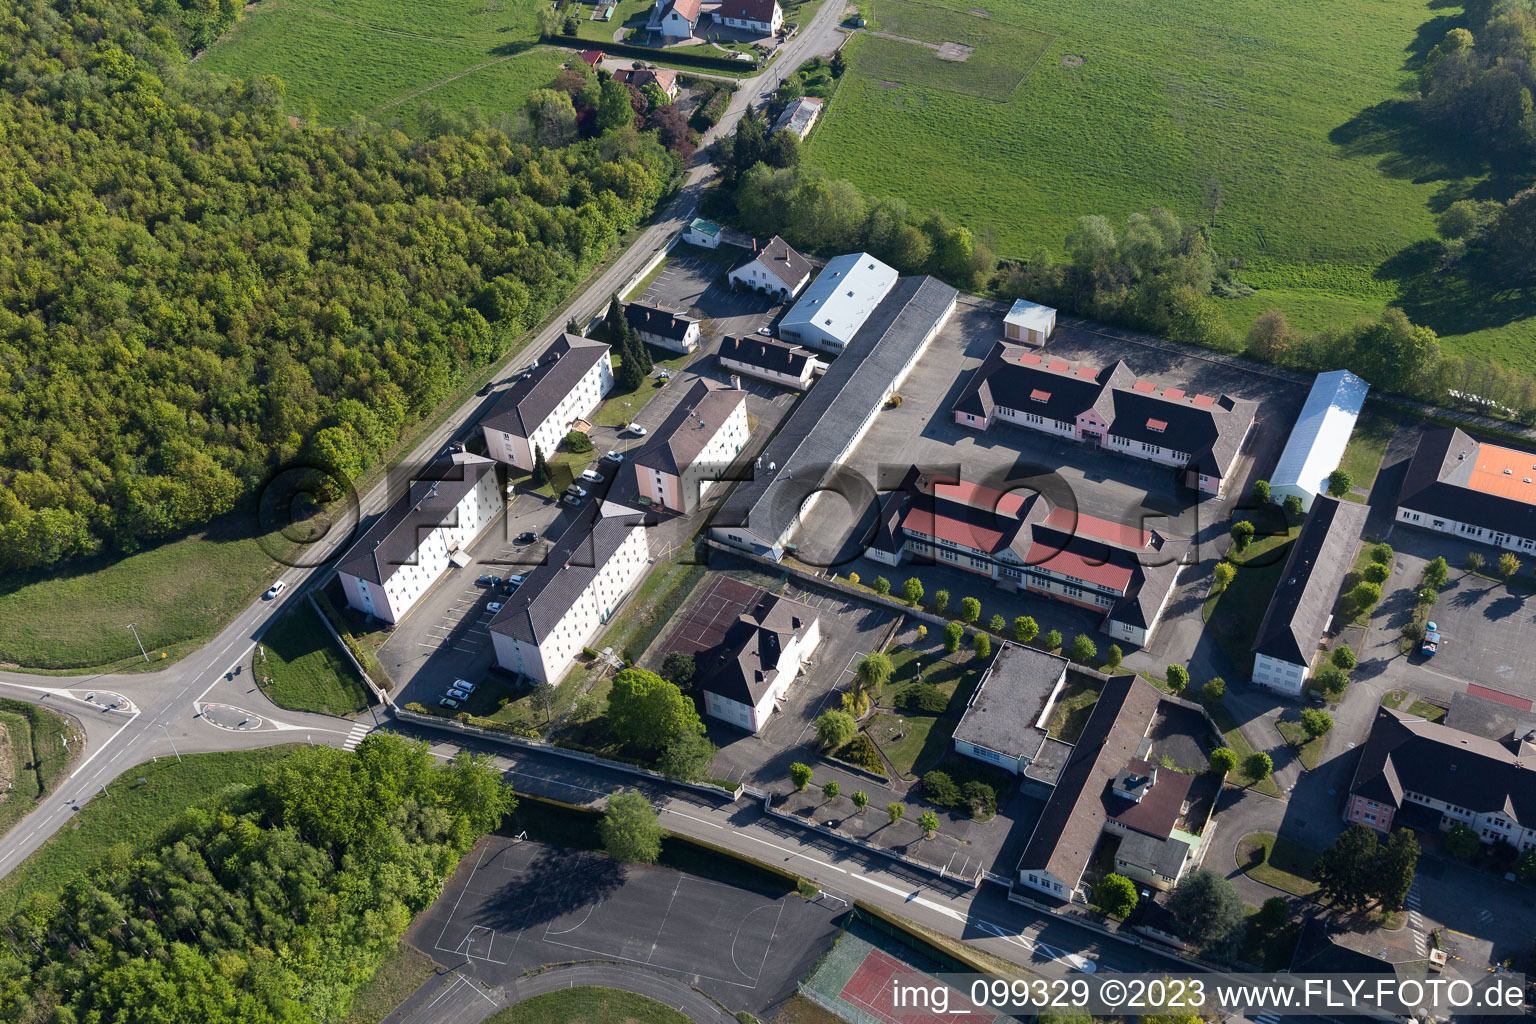 Drachenbronn-Birlenbach dans le département Bas Rhin, France du point de vue du drone